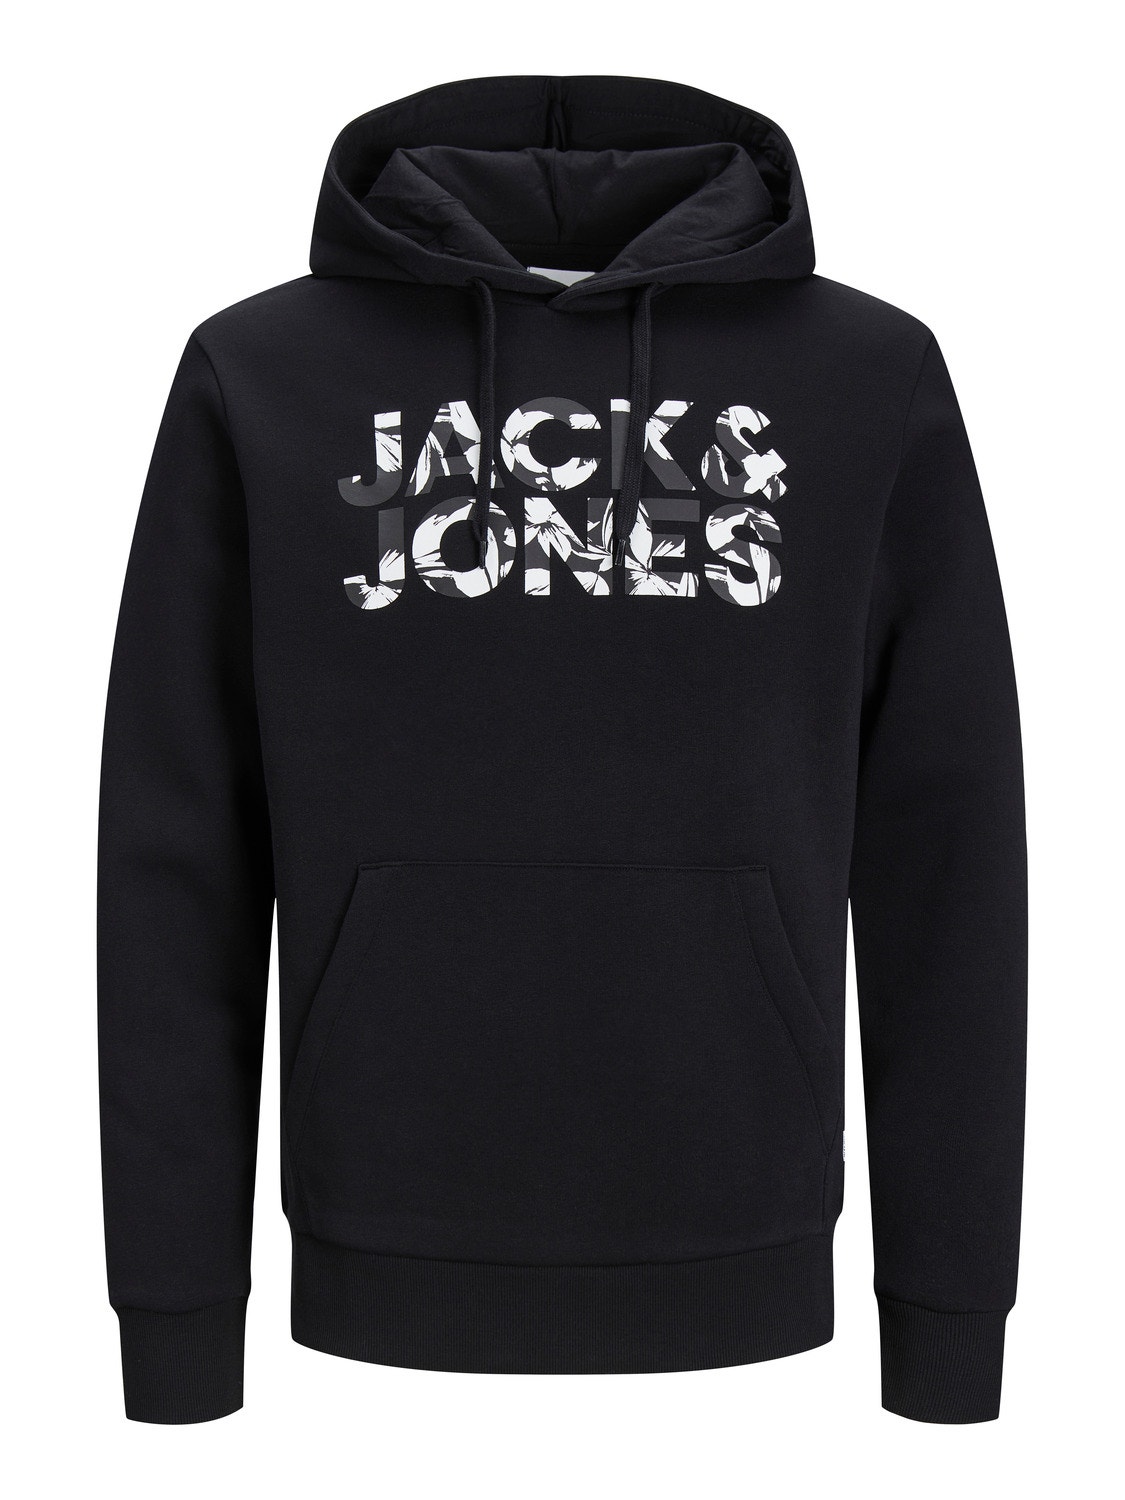 Jack & Jones Logo Kapuzenpullover -Black - 12250682